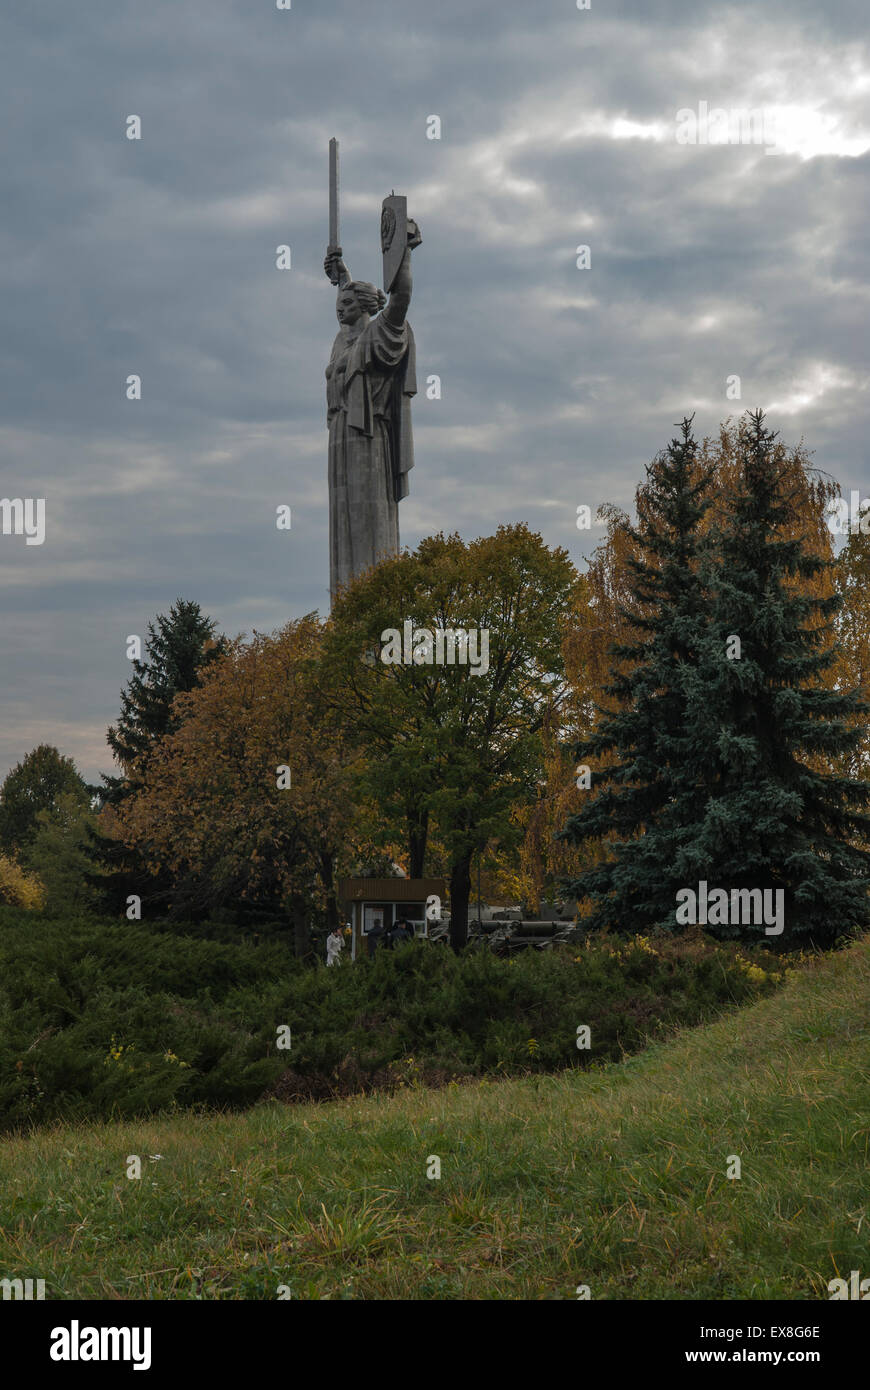 Rodina Mat, Statue of the Motherland, Kiev, Ukraine in Autumn Stock Photo